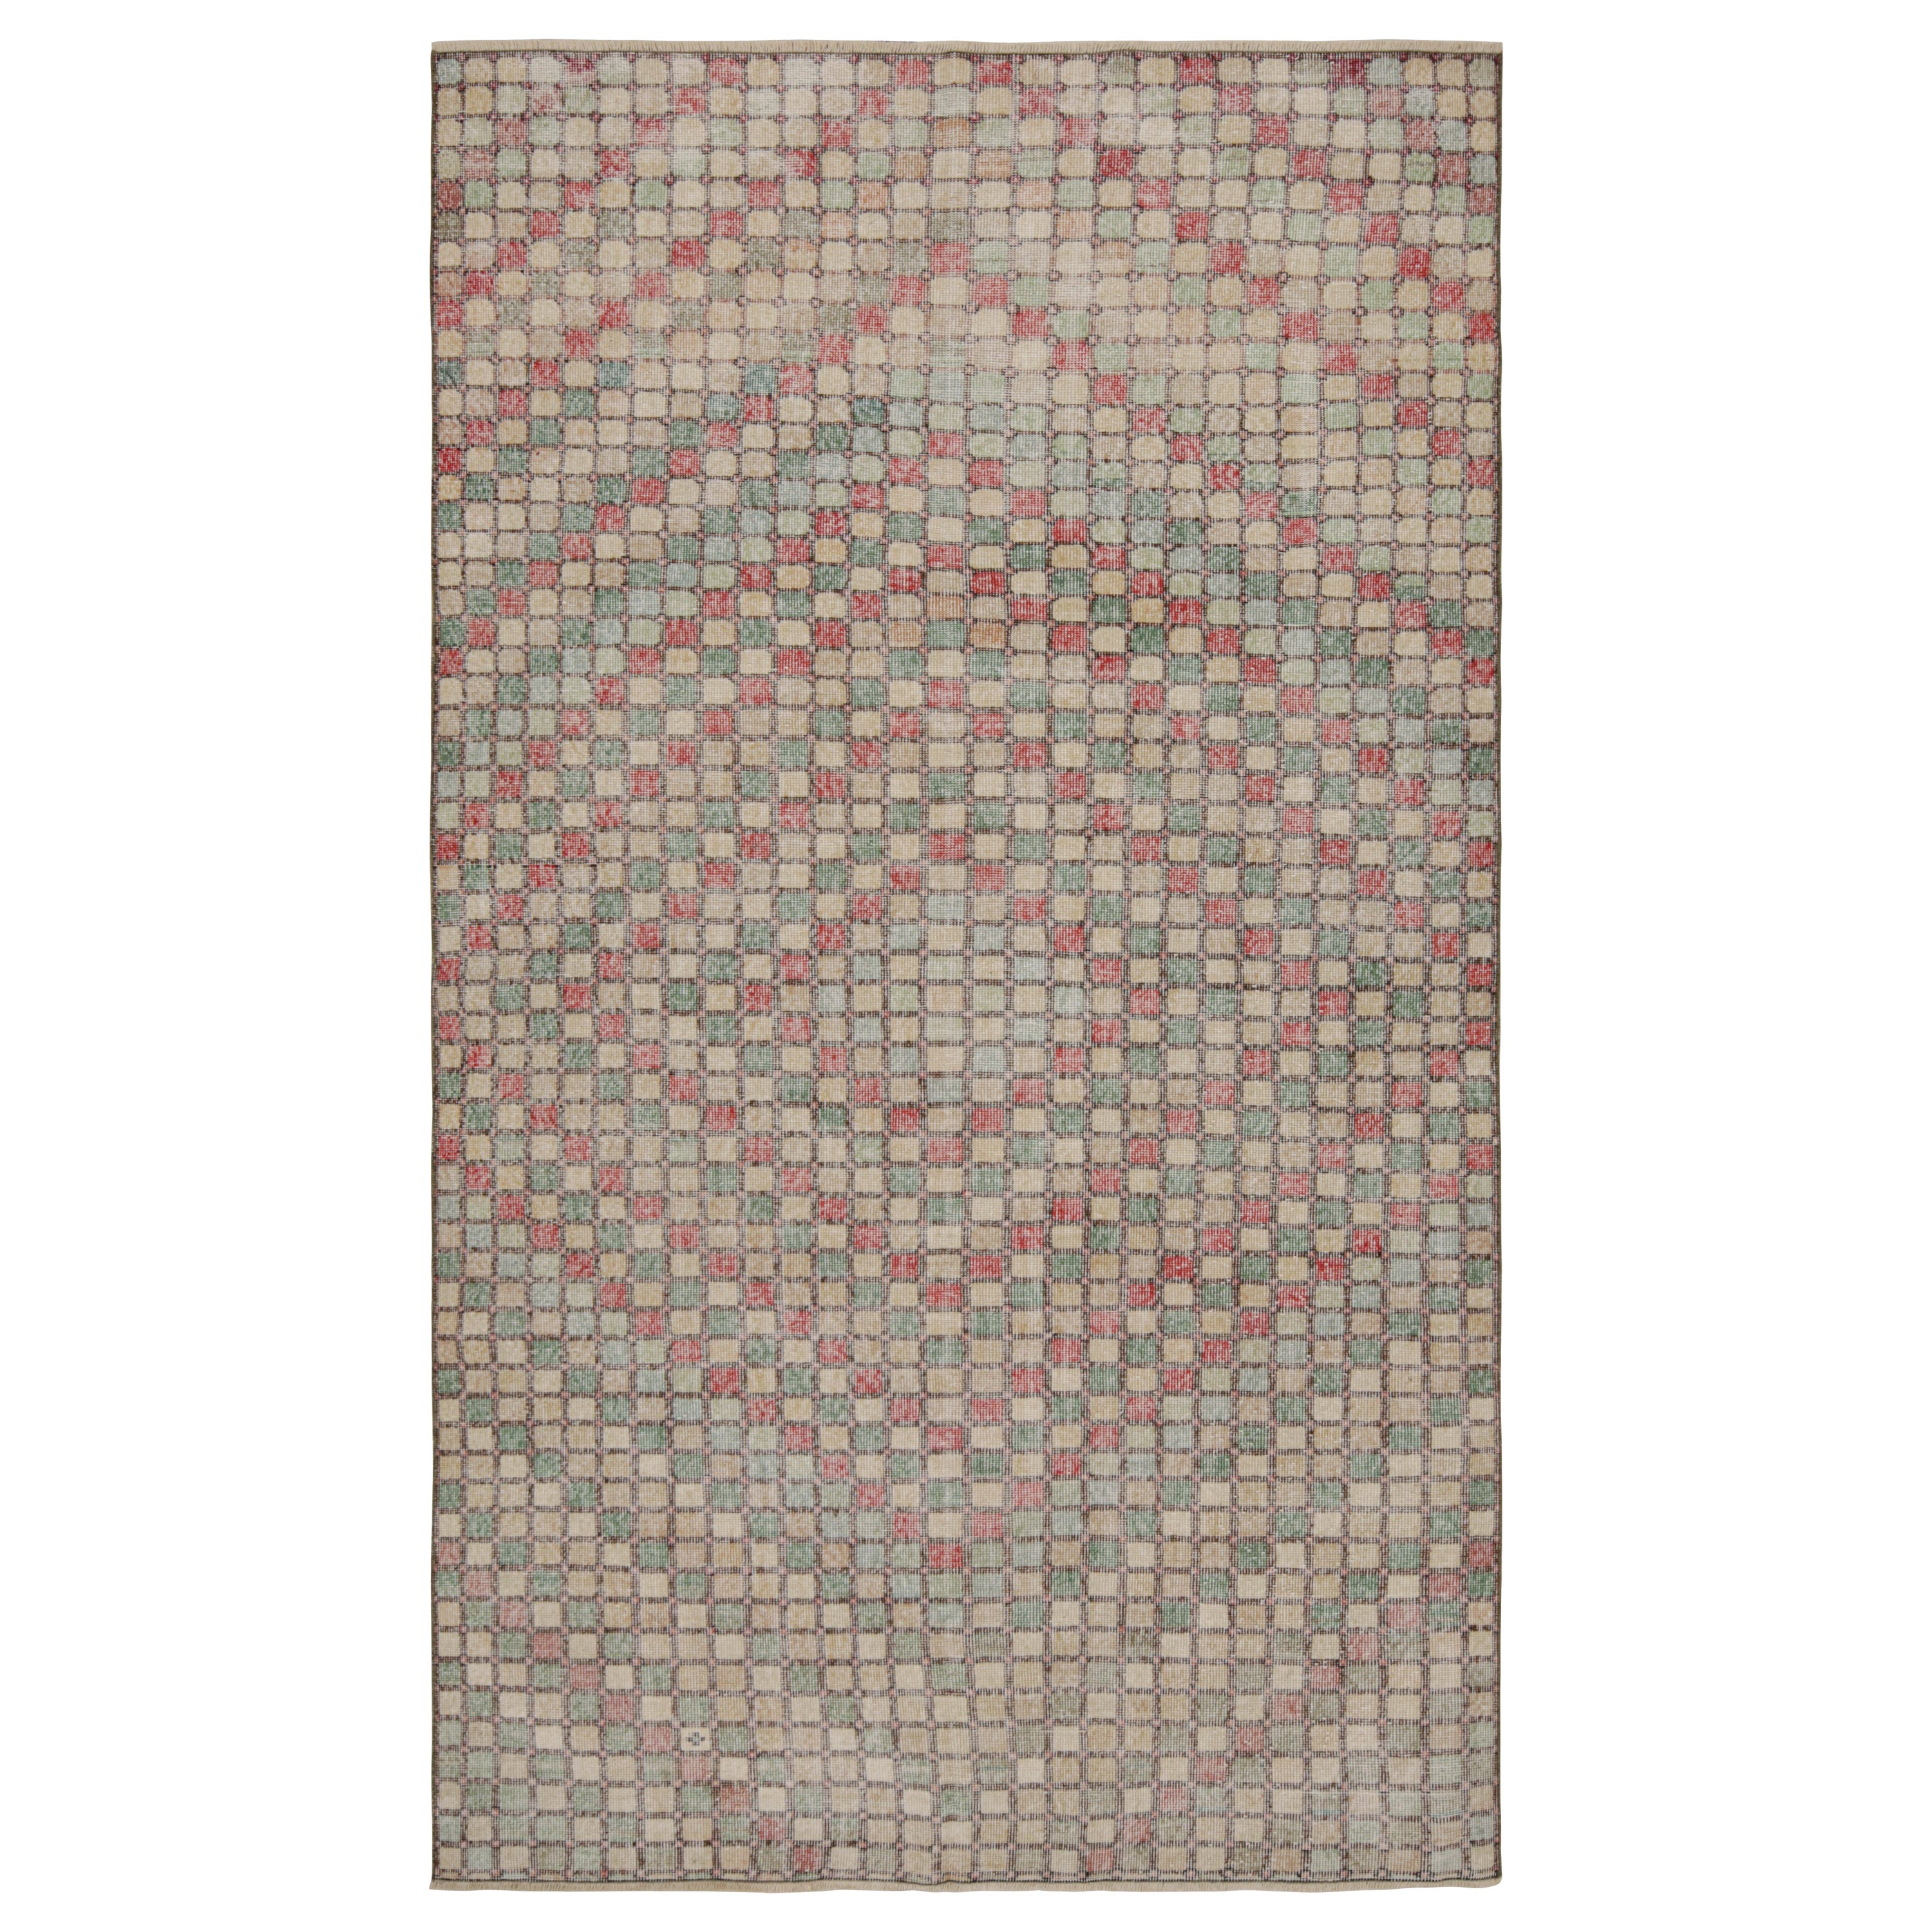 Vintage Zeki Müren Rug with Jewel Tone Geometric Patterns, from Rug & Kilim For Sale